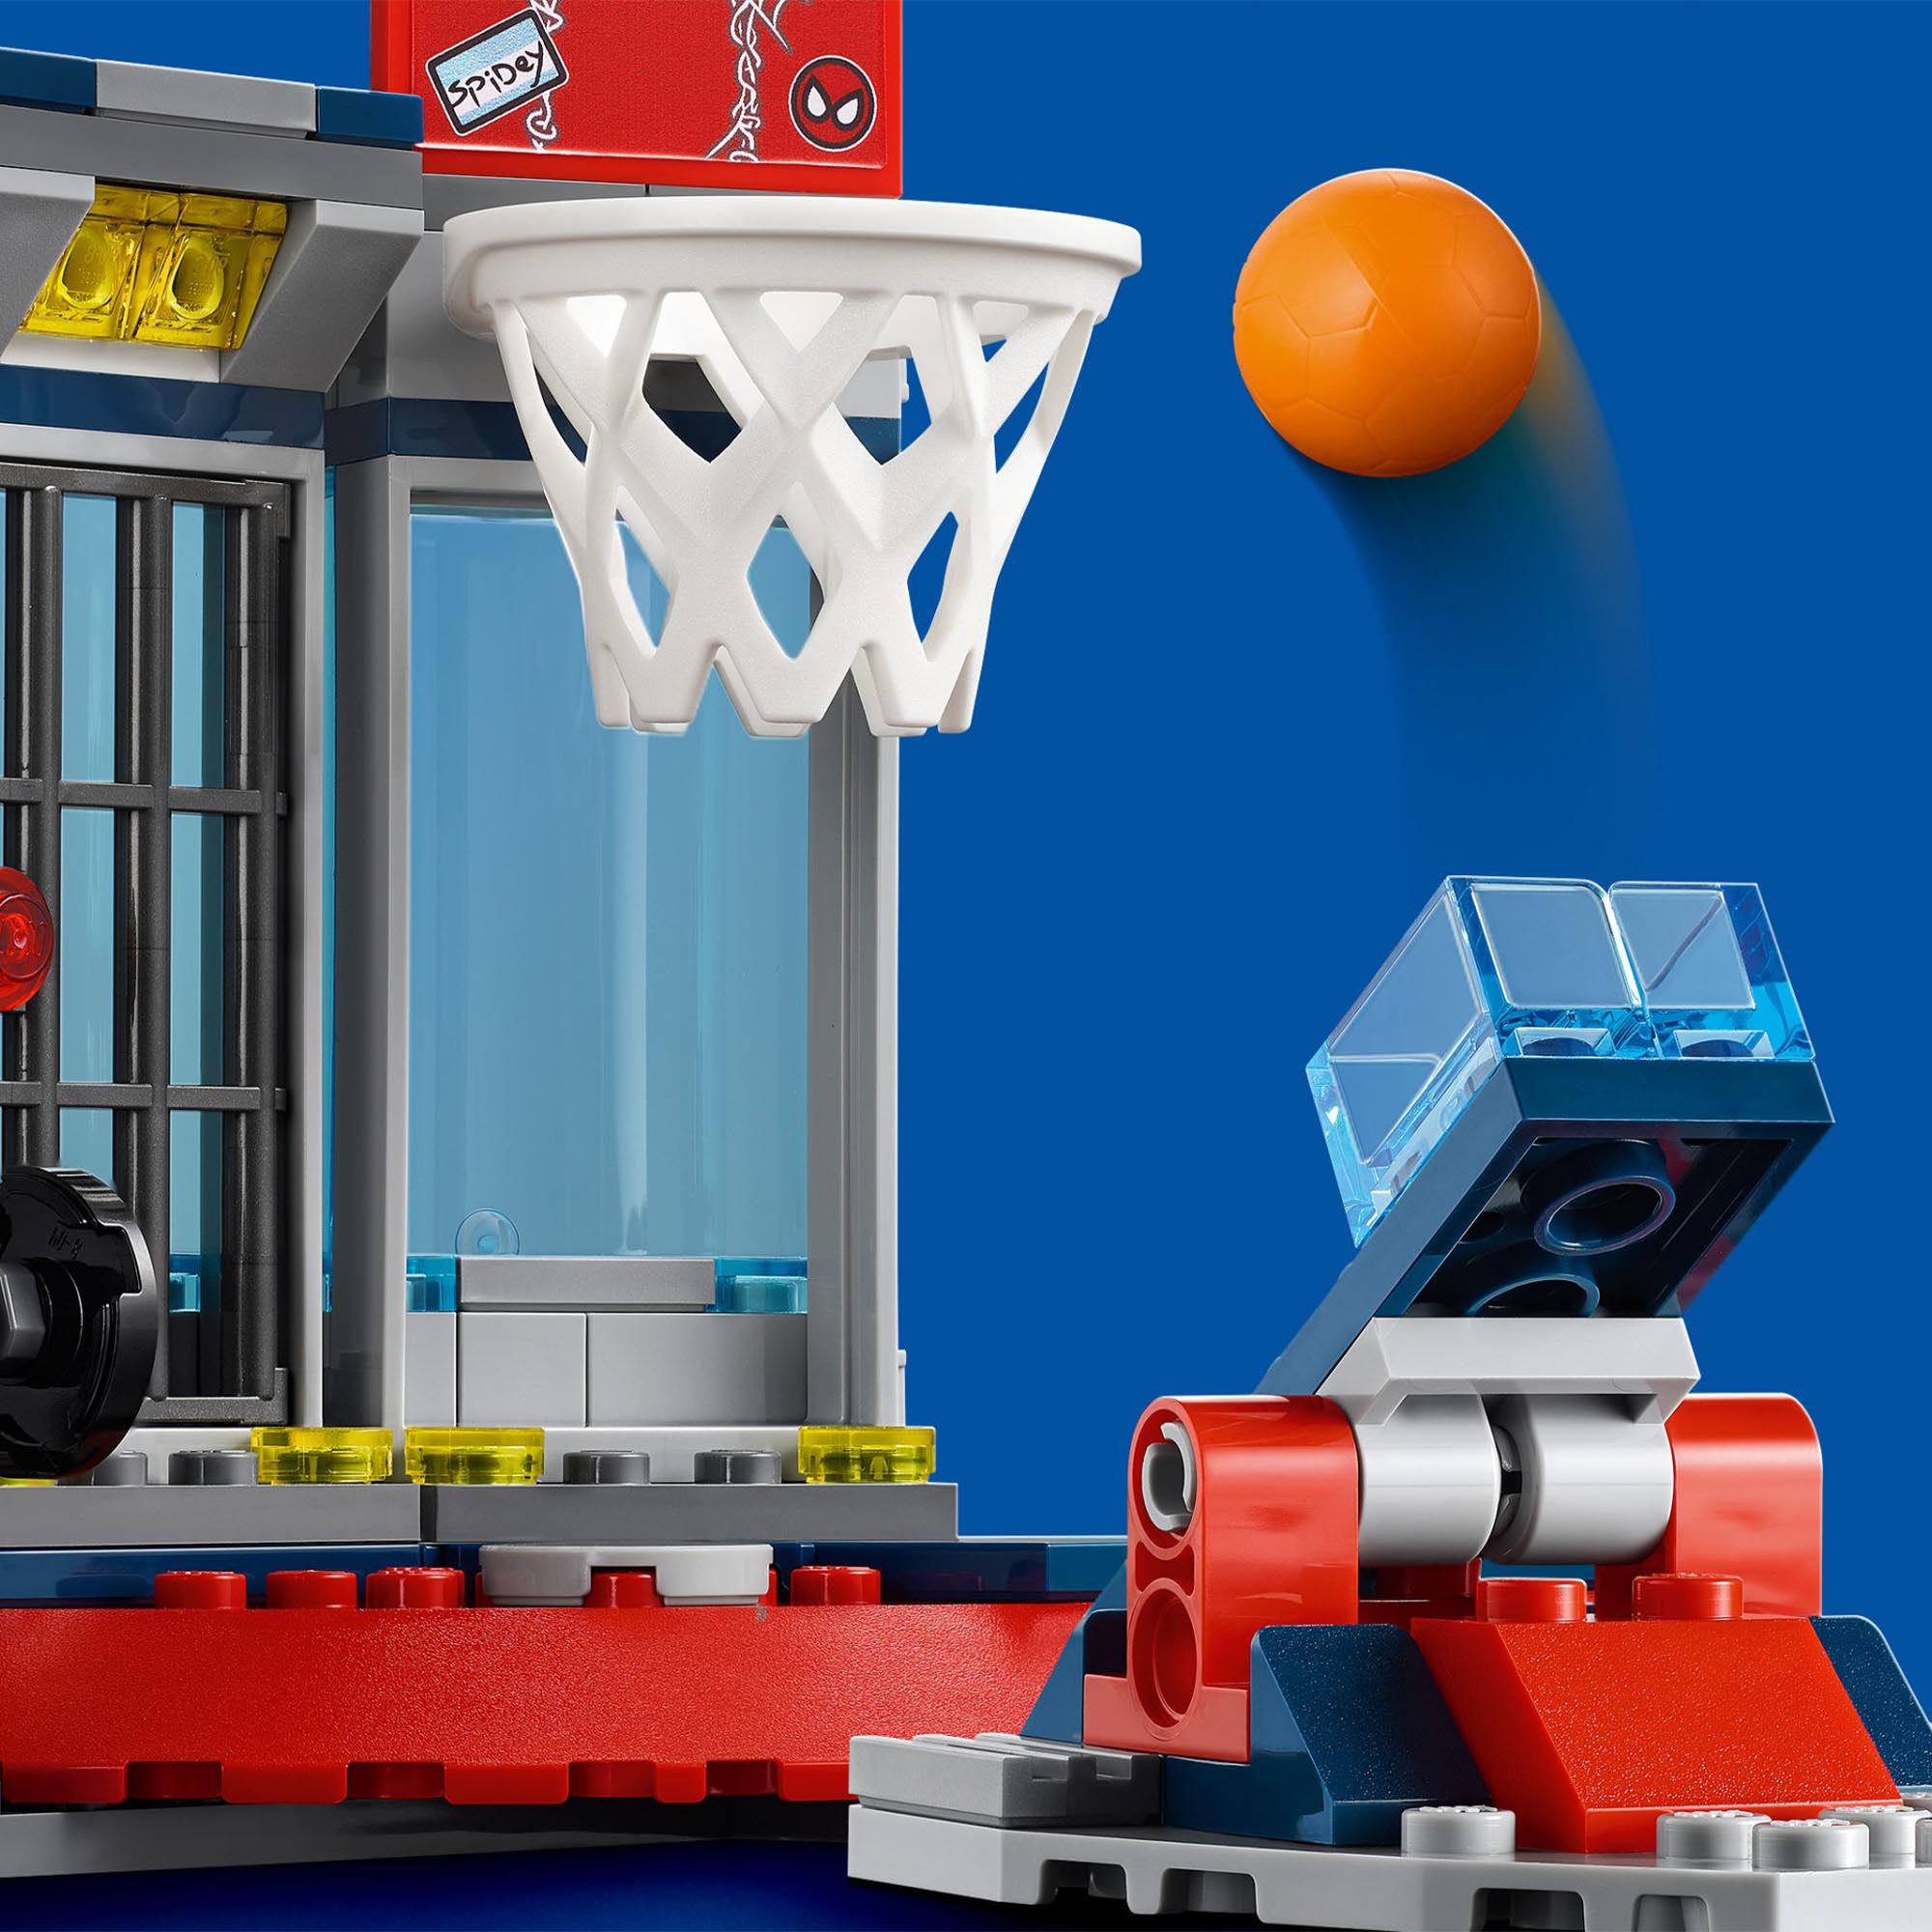 LEGO Super Heroes Marvel Attacco al Covo del Ragno, Playset con Minifigure di Go 76175, , large